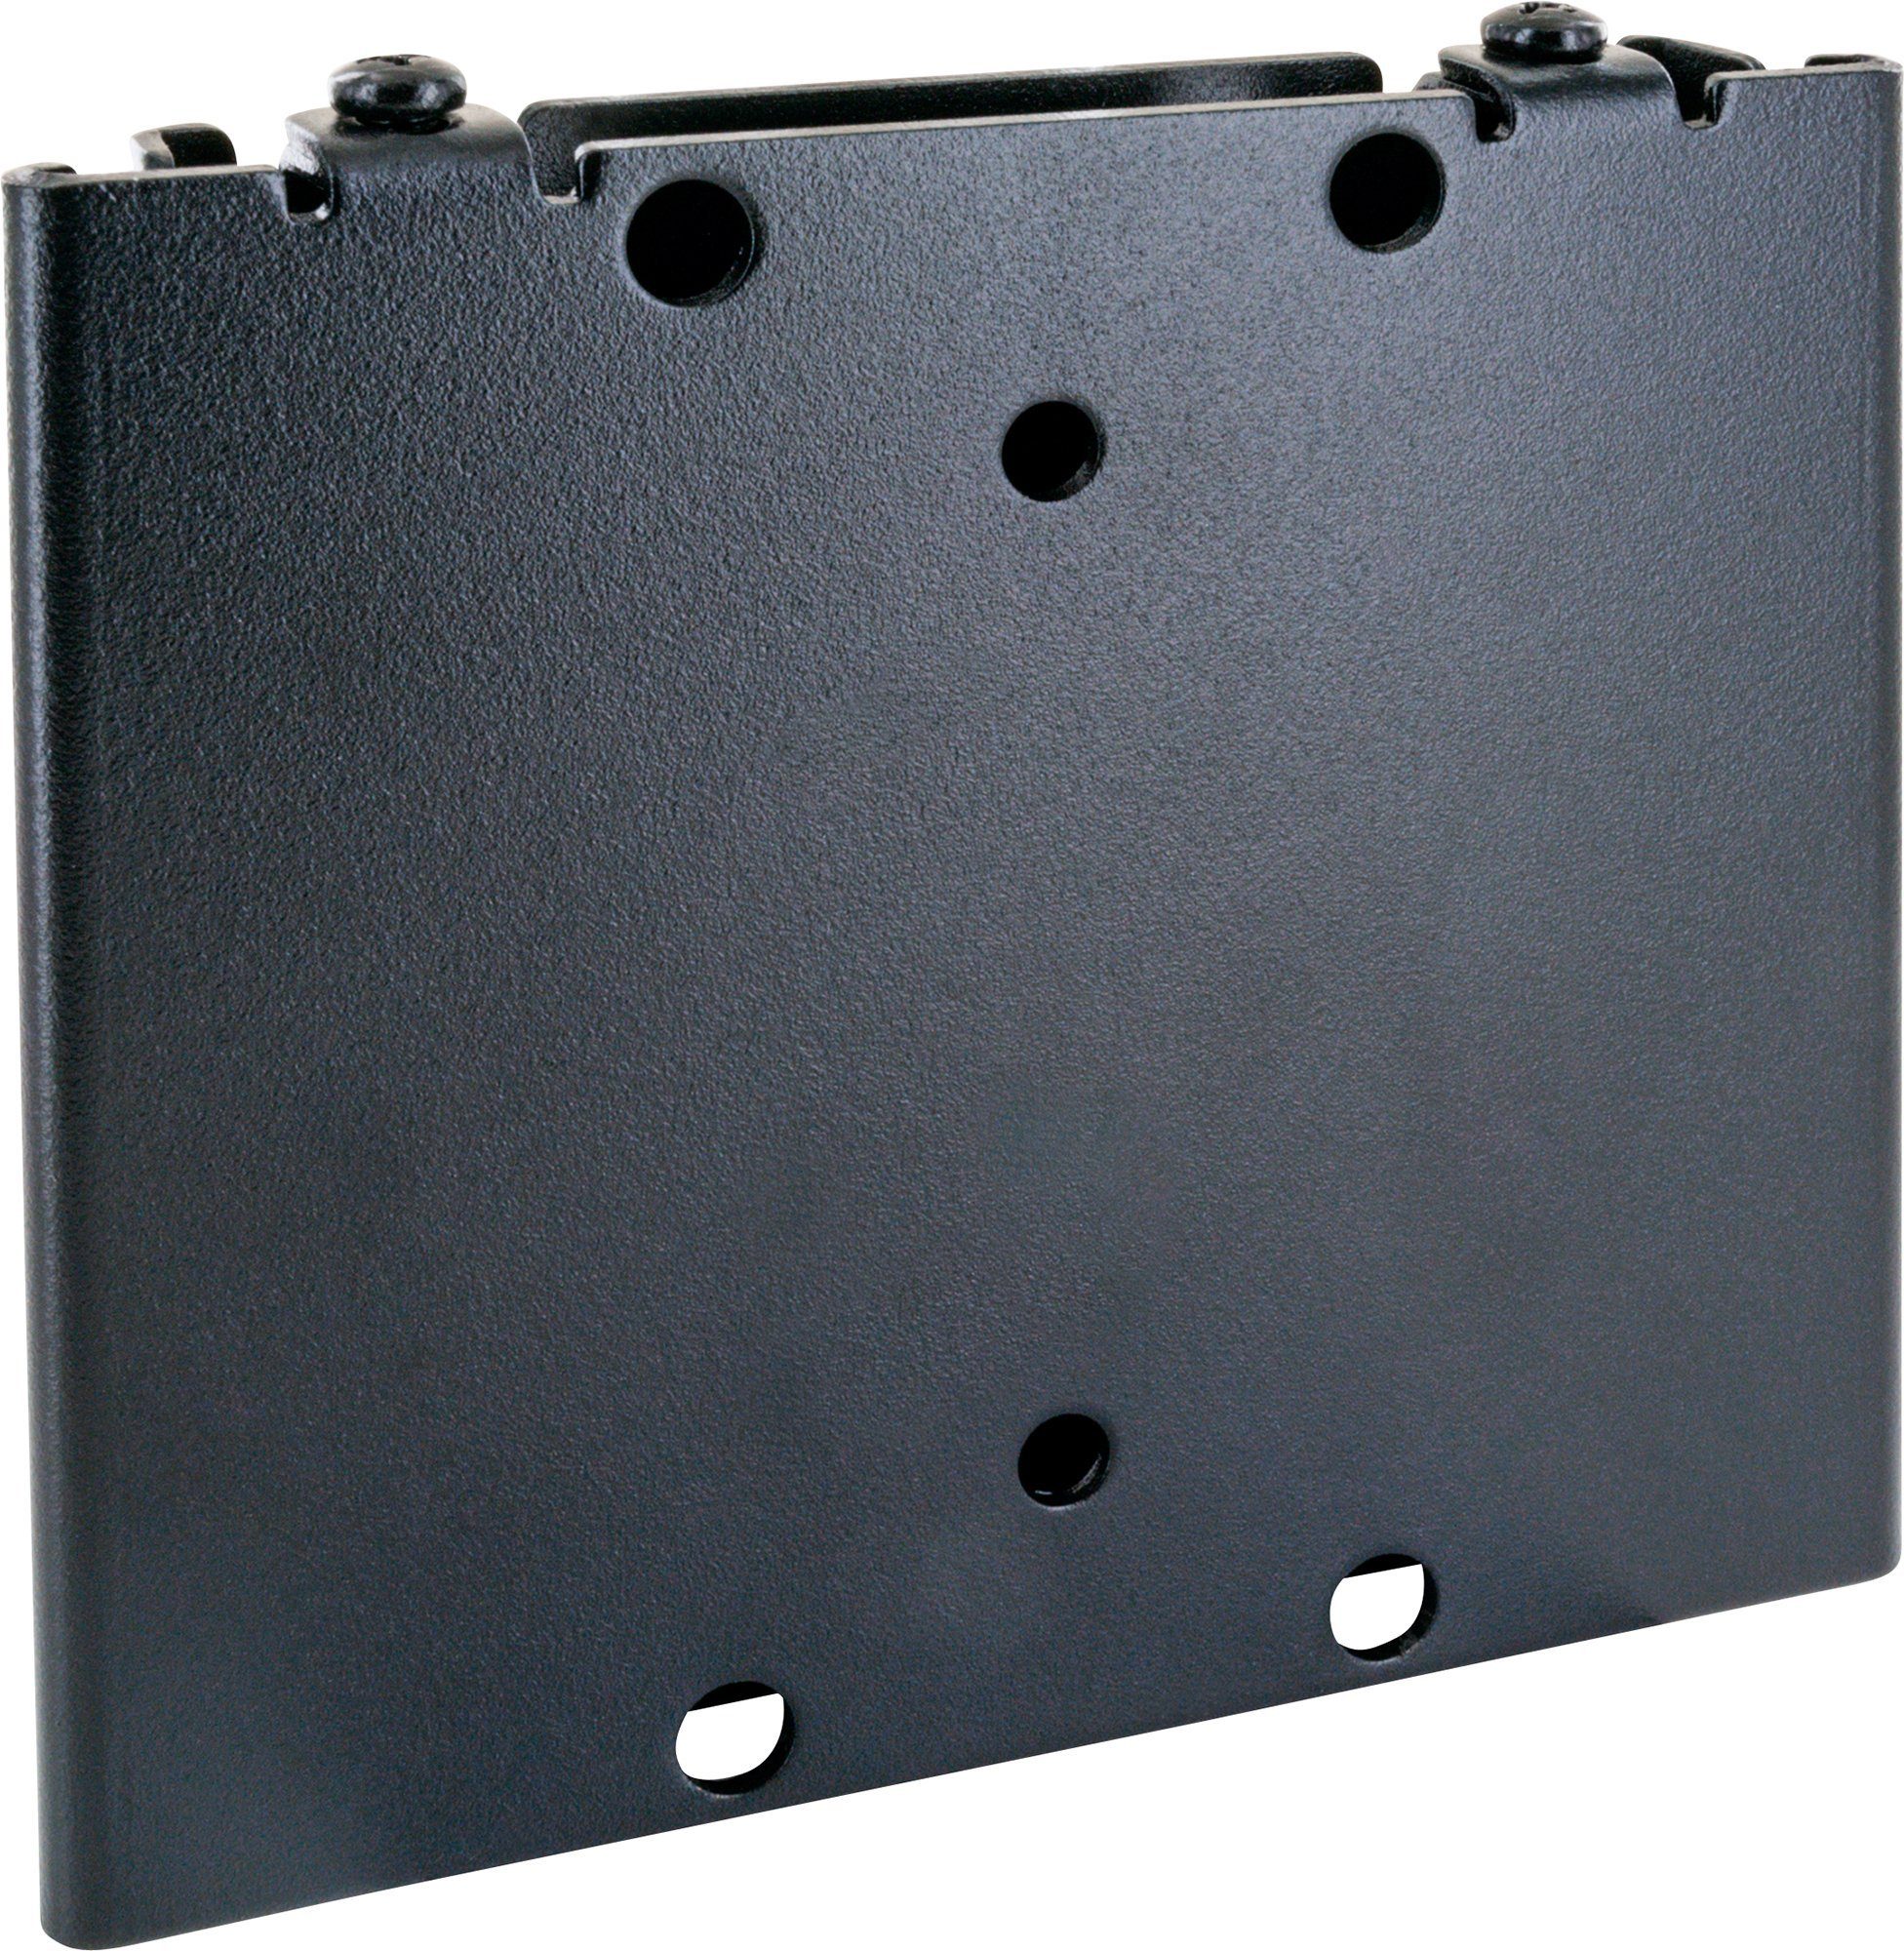 Schwaiger LWH1323 511 TV-Wandhalterung, bis 30kg, 27 Zoll, schwarz) fix, bis 100x100mm, (bis